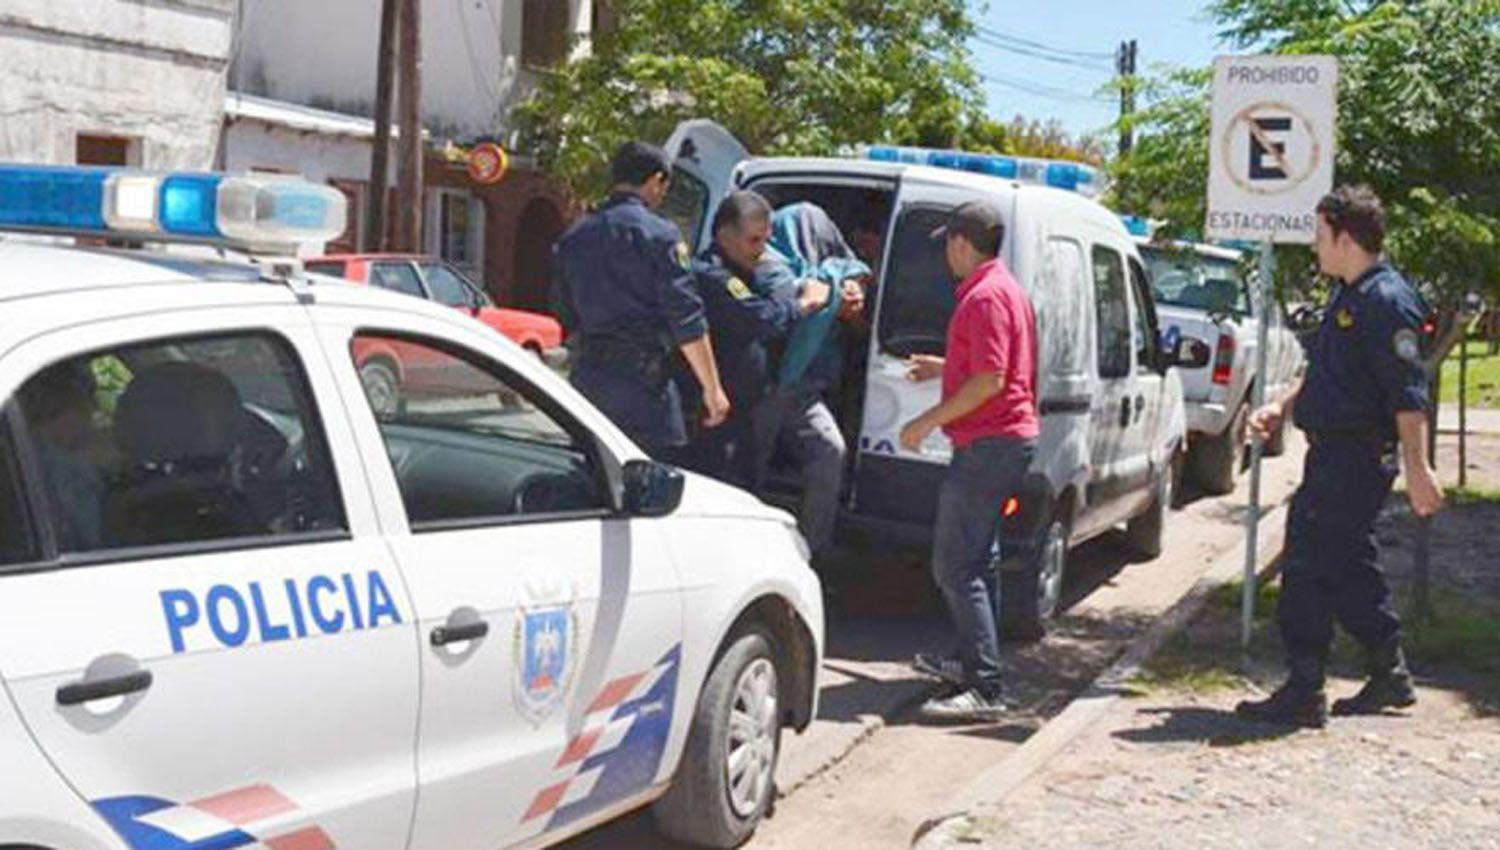 Policiacutea detenido acusado de abusar de su hijastra de 9 antildeos